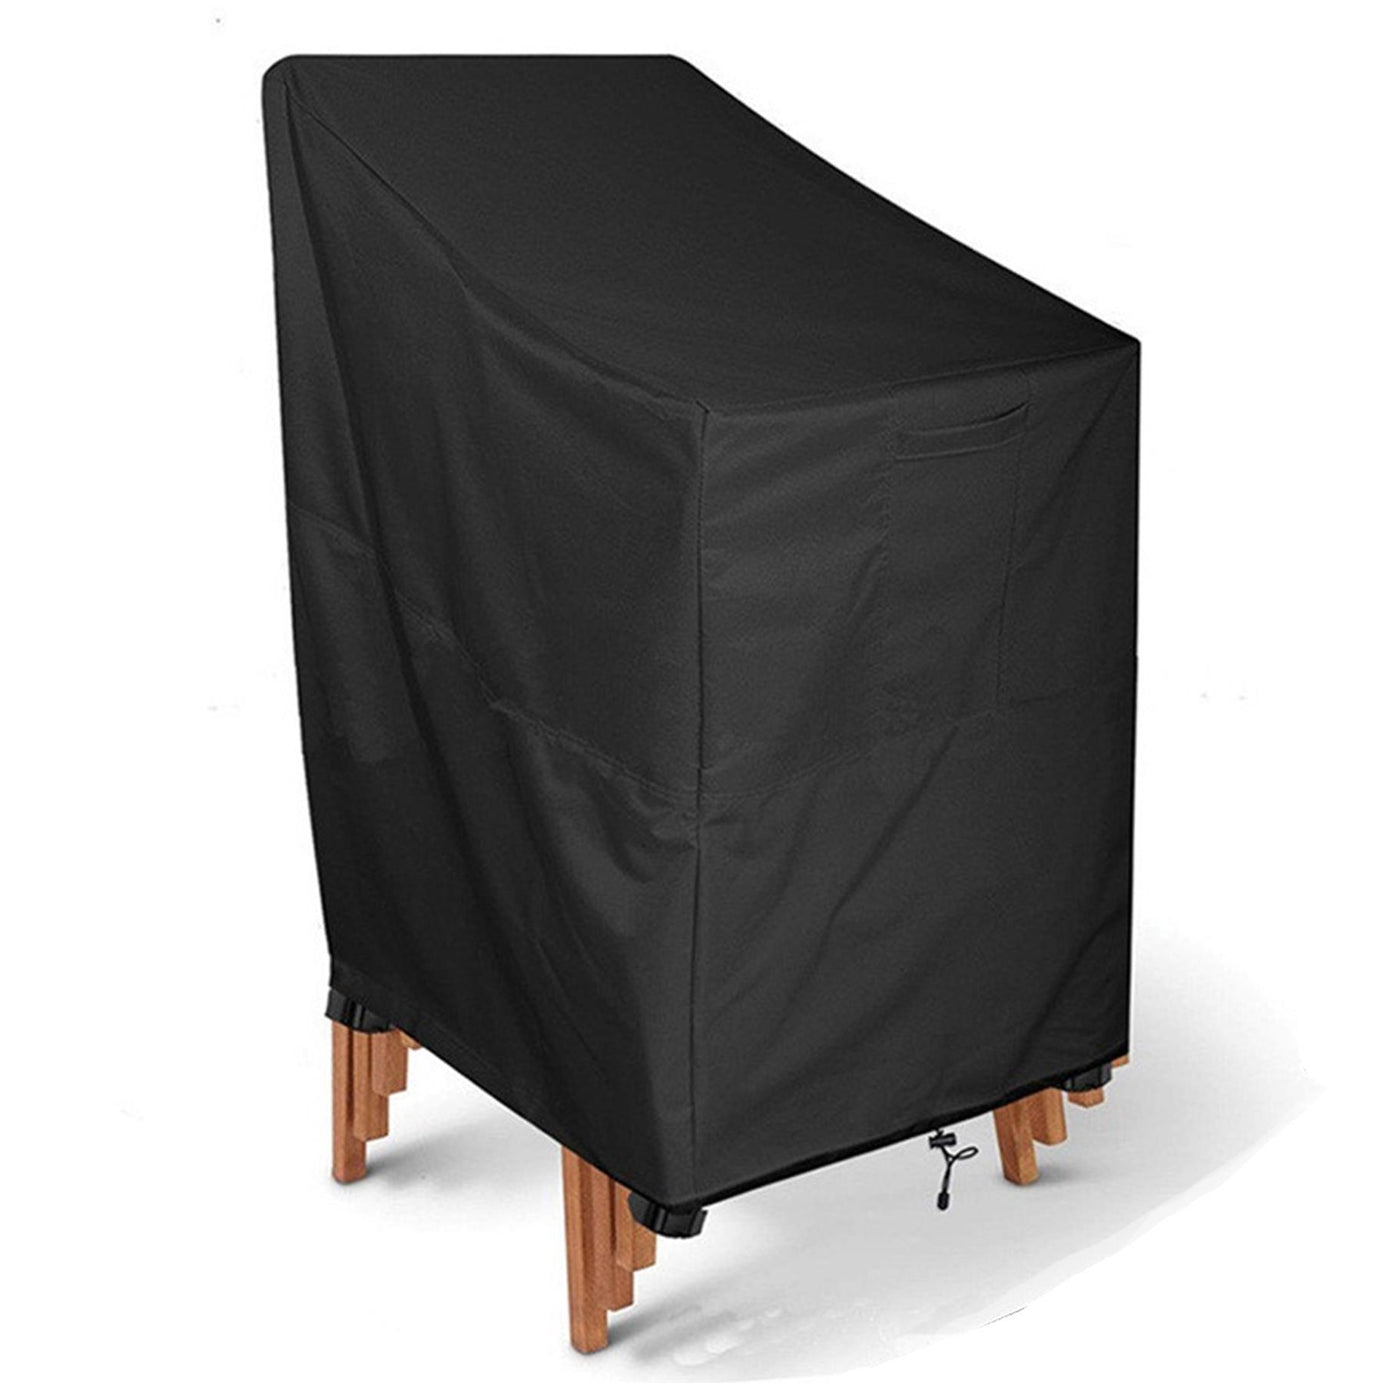 Deck Chair Covers Waterproof